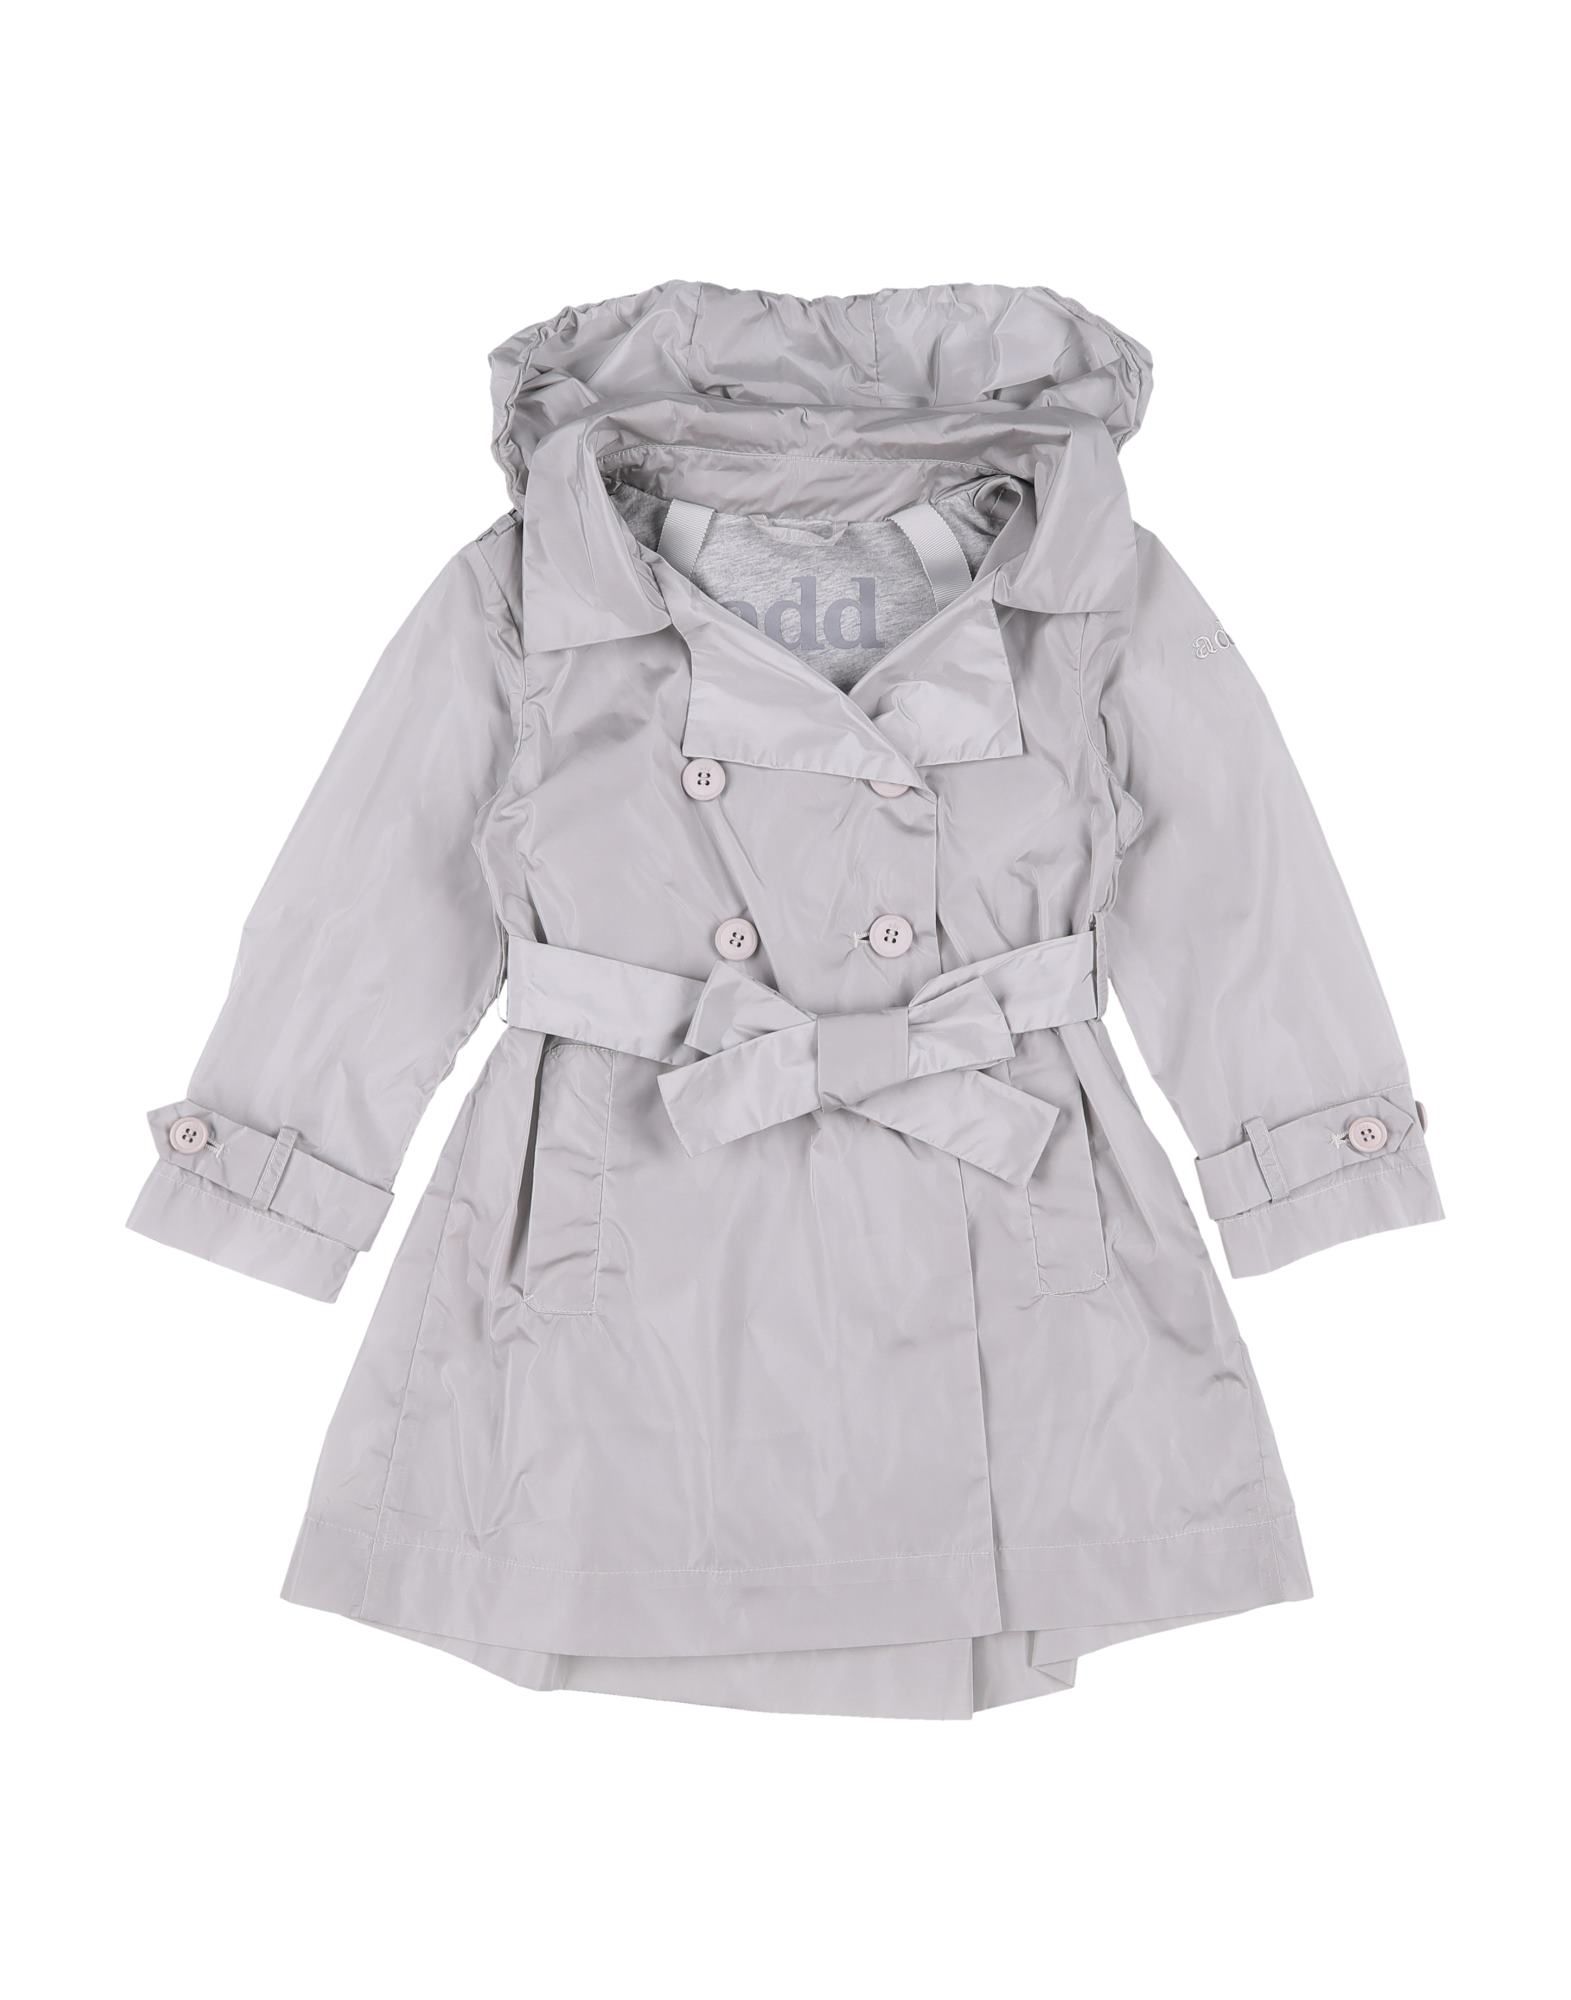 Add Kids' Overcoats In Light Grey